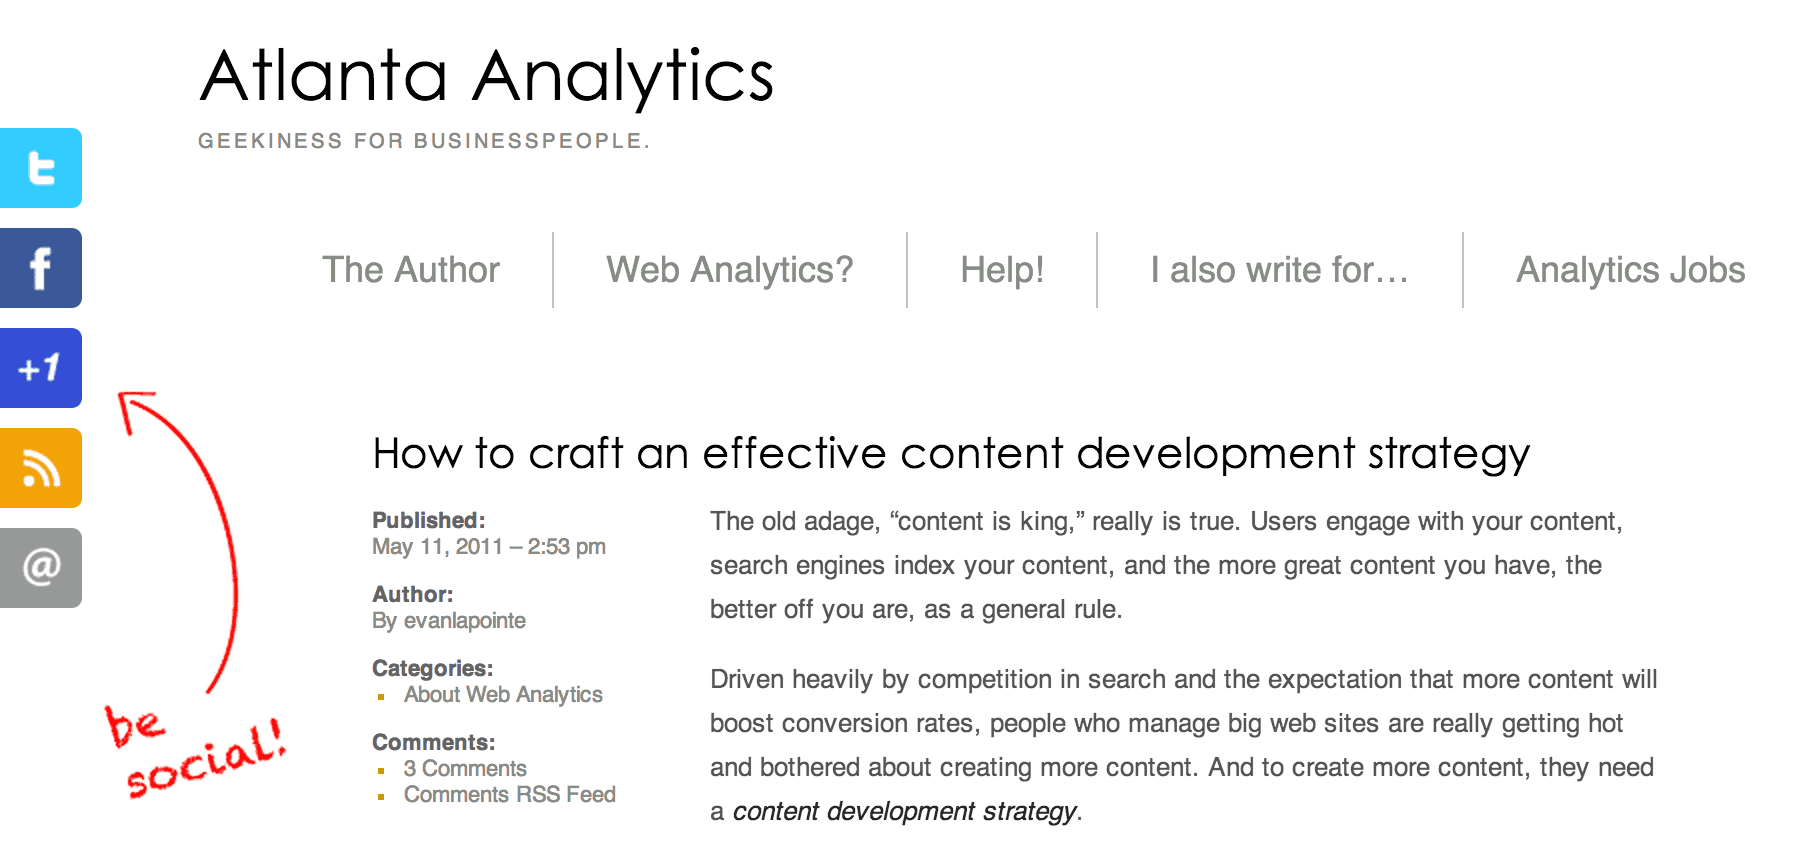 Atlanta Analytics Article on Content Development